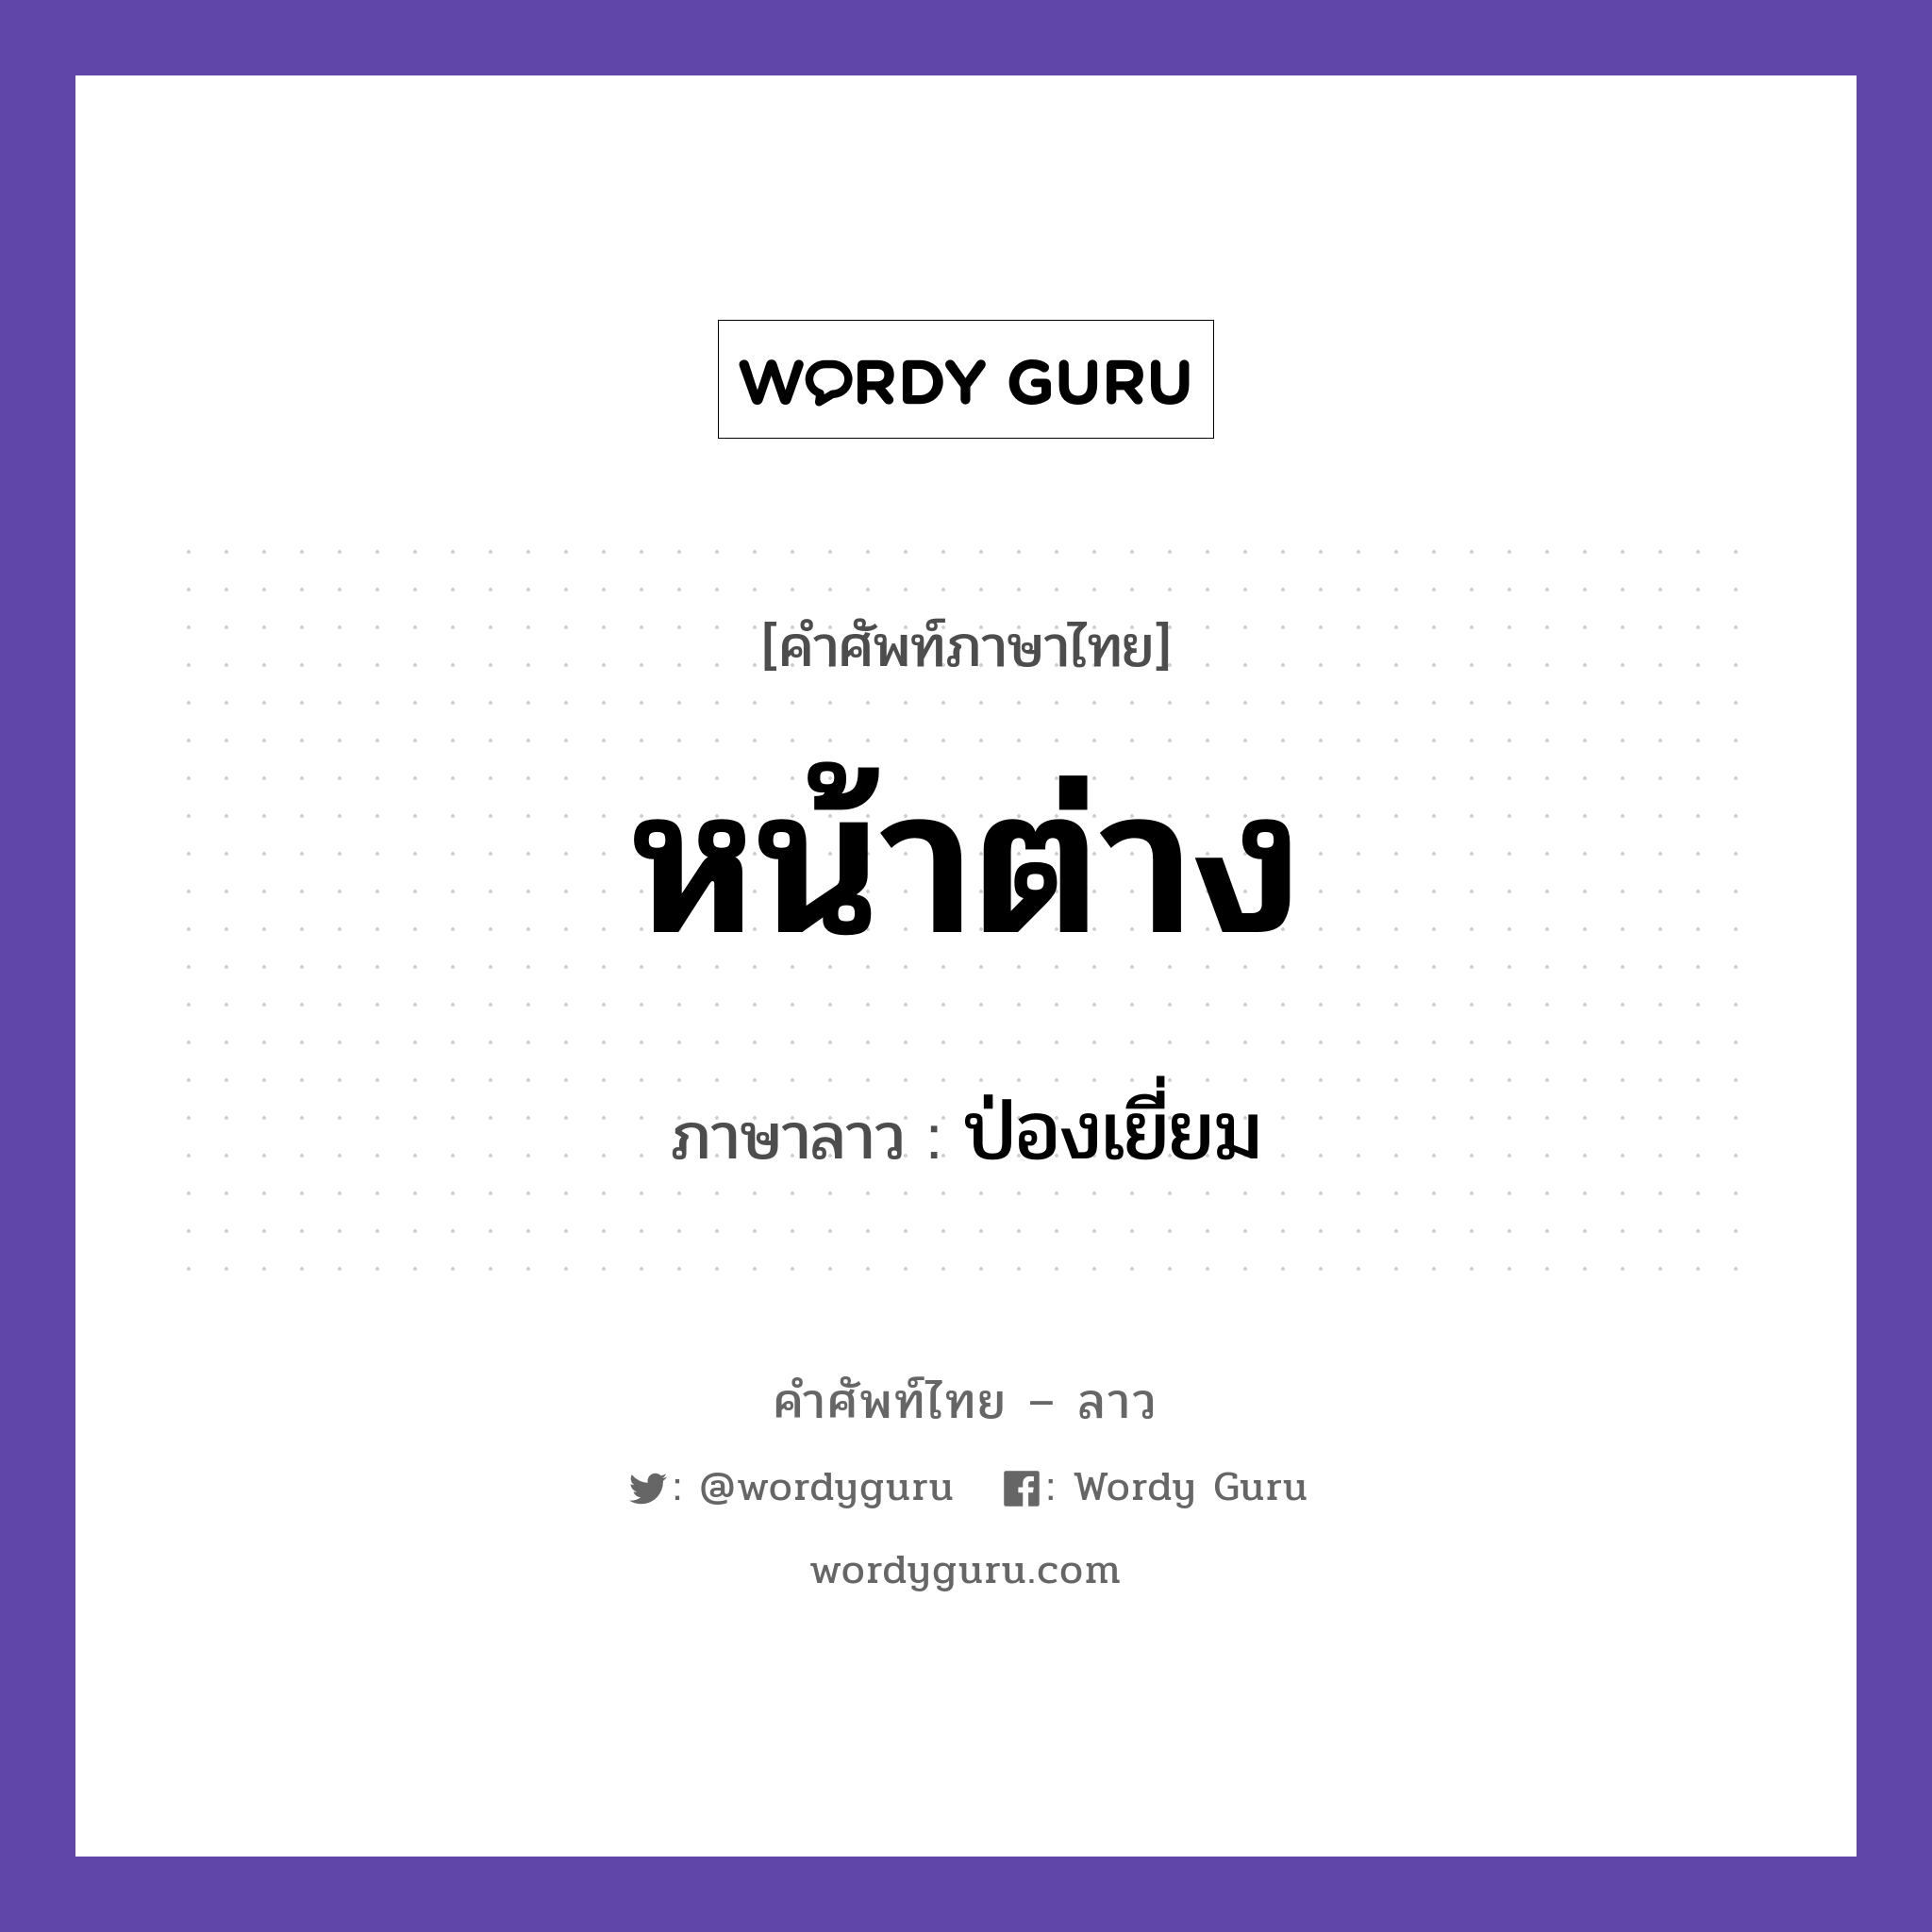 หน้าต่าง ภาษาลาวคืออะไร, คำศัพท์ภาษาไทย - ลาว หน้าต่าง ภาษาลาว ป่องเยี่ยม หมวด คำที่พบได้ในชีวิตประจำวัน หมวด คำที่พบได้ในชีวิตประจำวัน